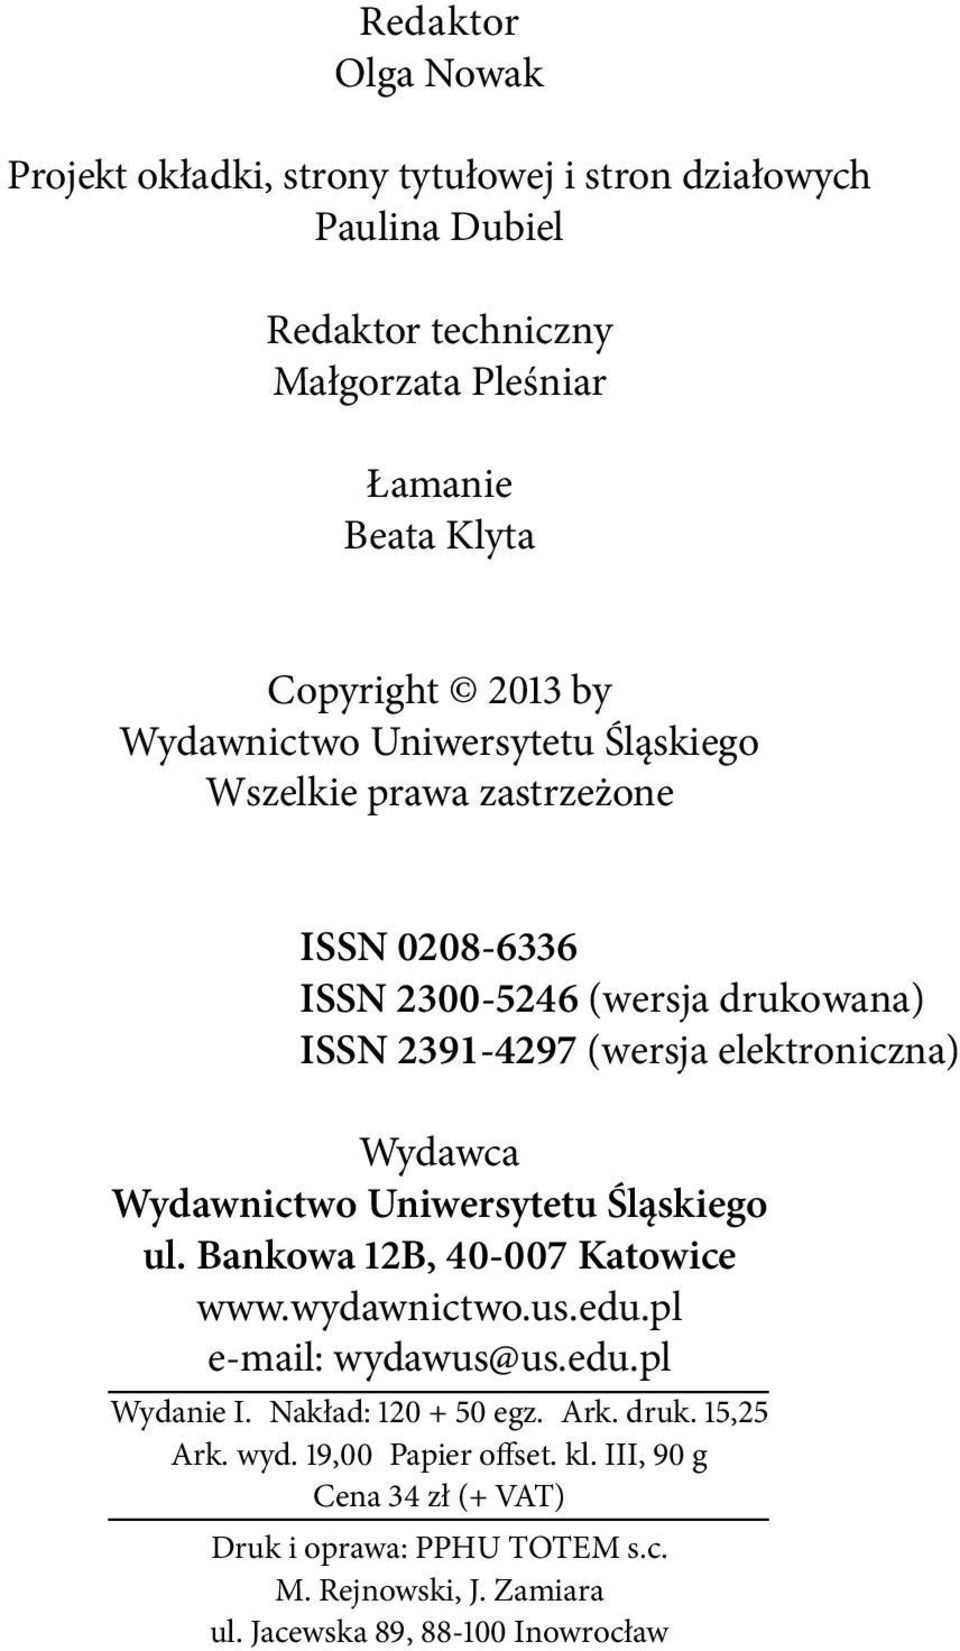 Wydawca Wydawnictwo Uniwersytetu Śląskiego ul. Bankowa 12B, 40-007 Katowice www.wydawnictwo.us.edu.pl e-mail: wydawus@us.edu.pl Wydanie I. Nakład: 120 + 50 egz.